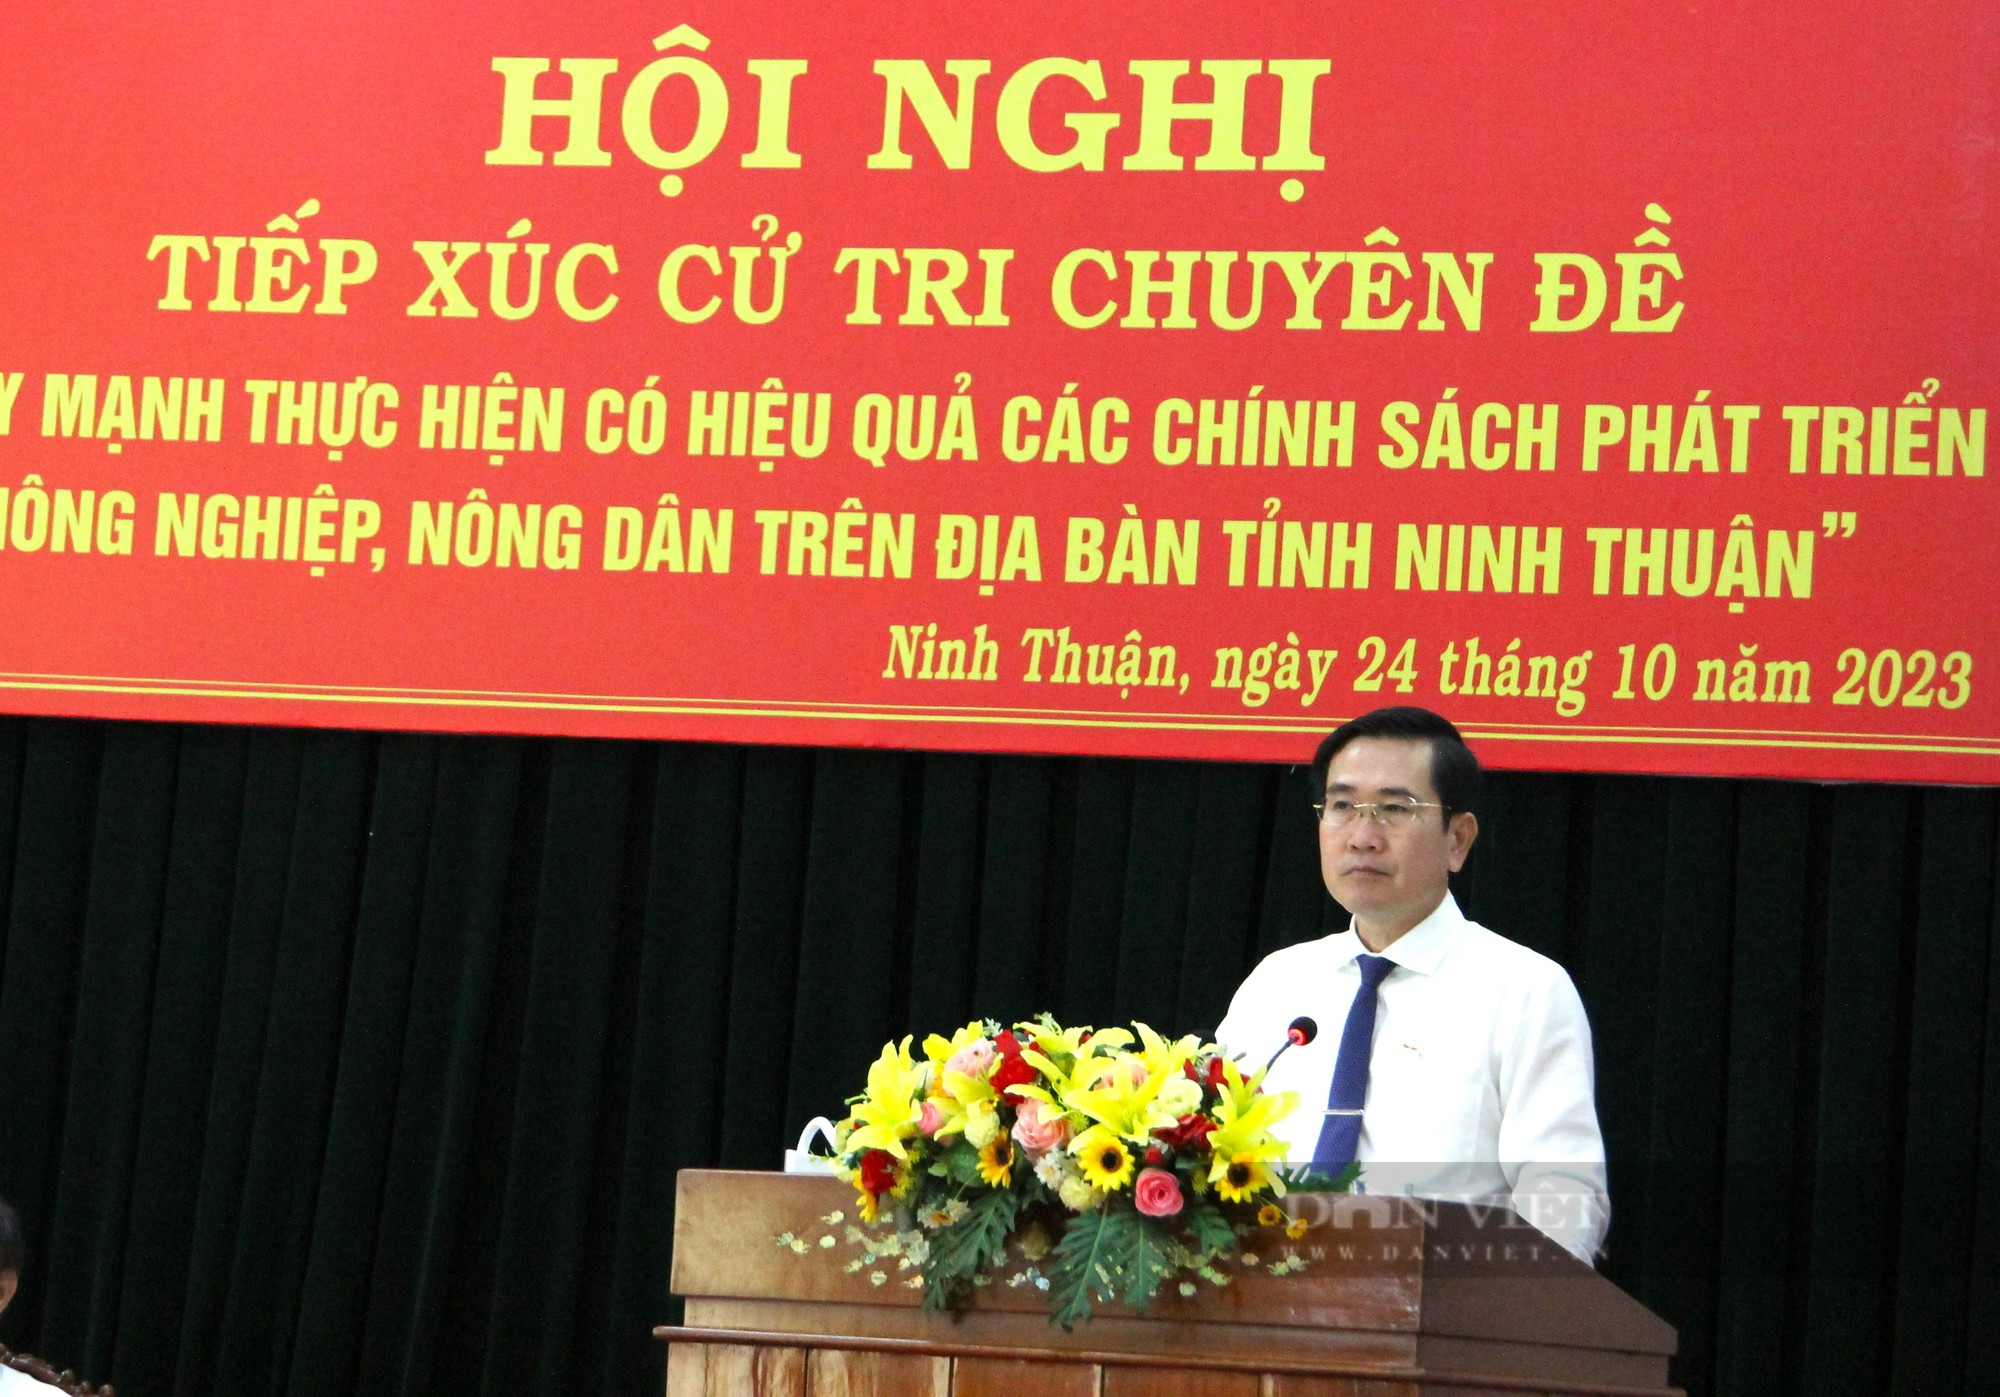 Tiếp xúc cử tri chuyên đề nông nghiệp, nông dân tại Ninh Thuận - Ảnh 7.